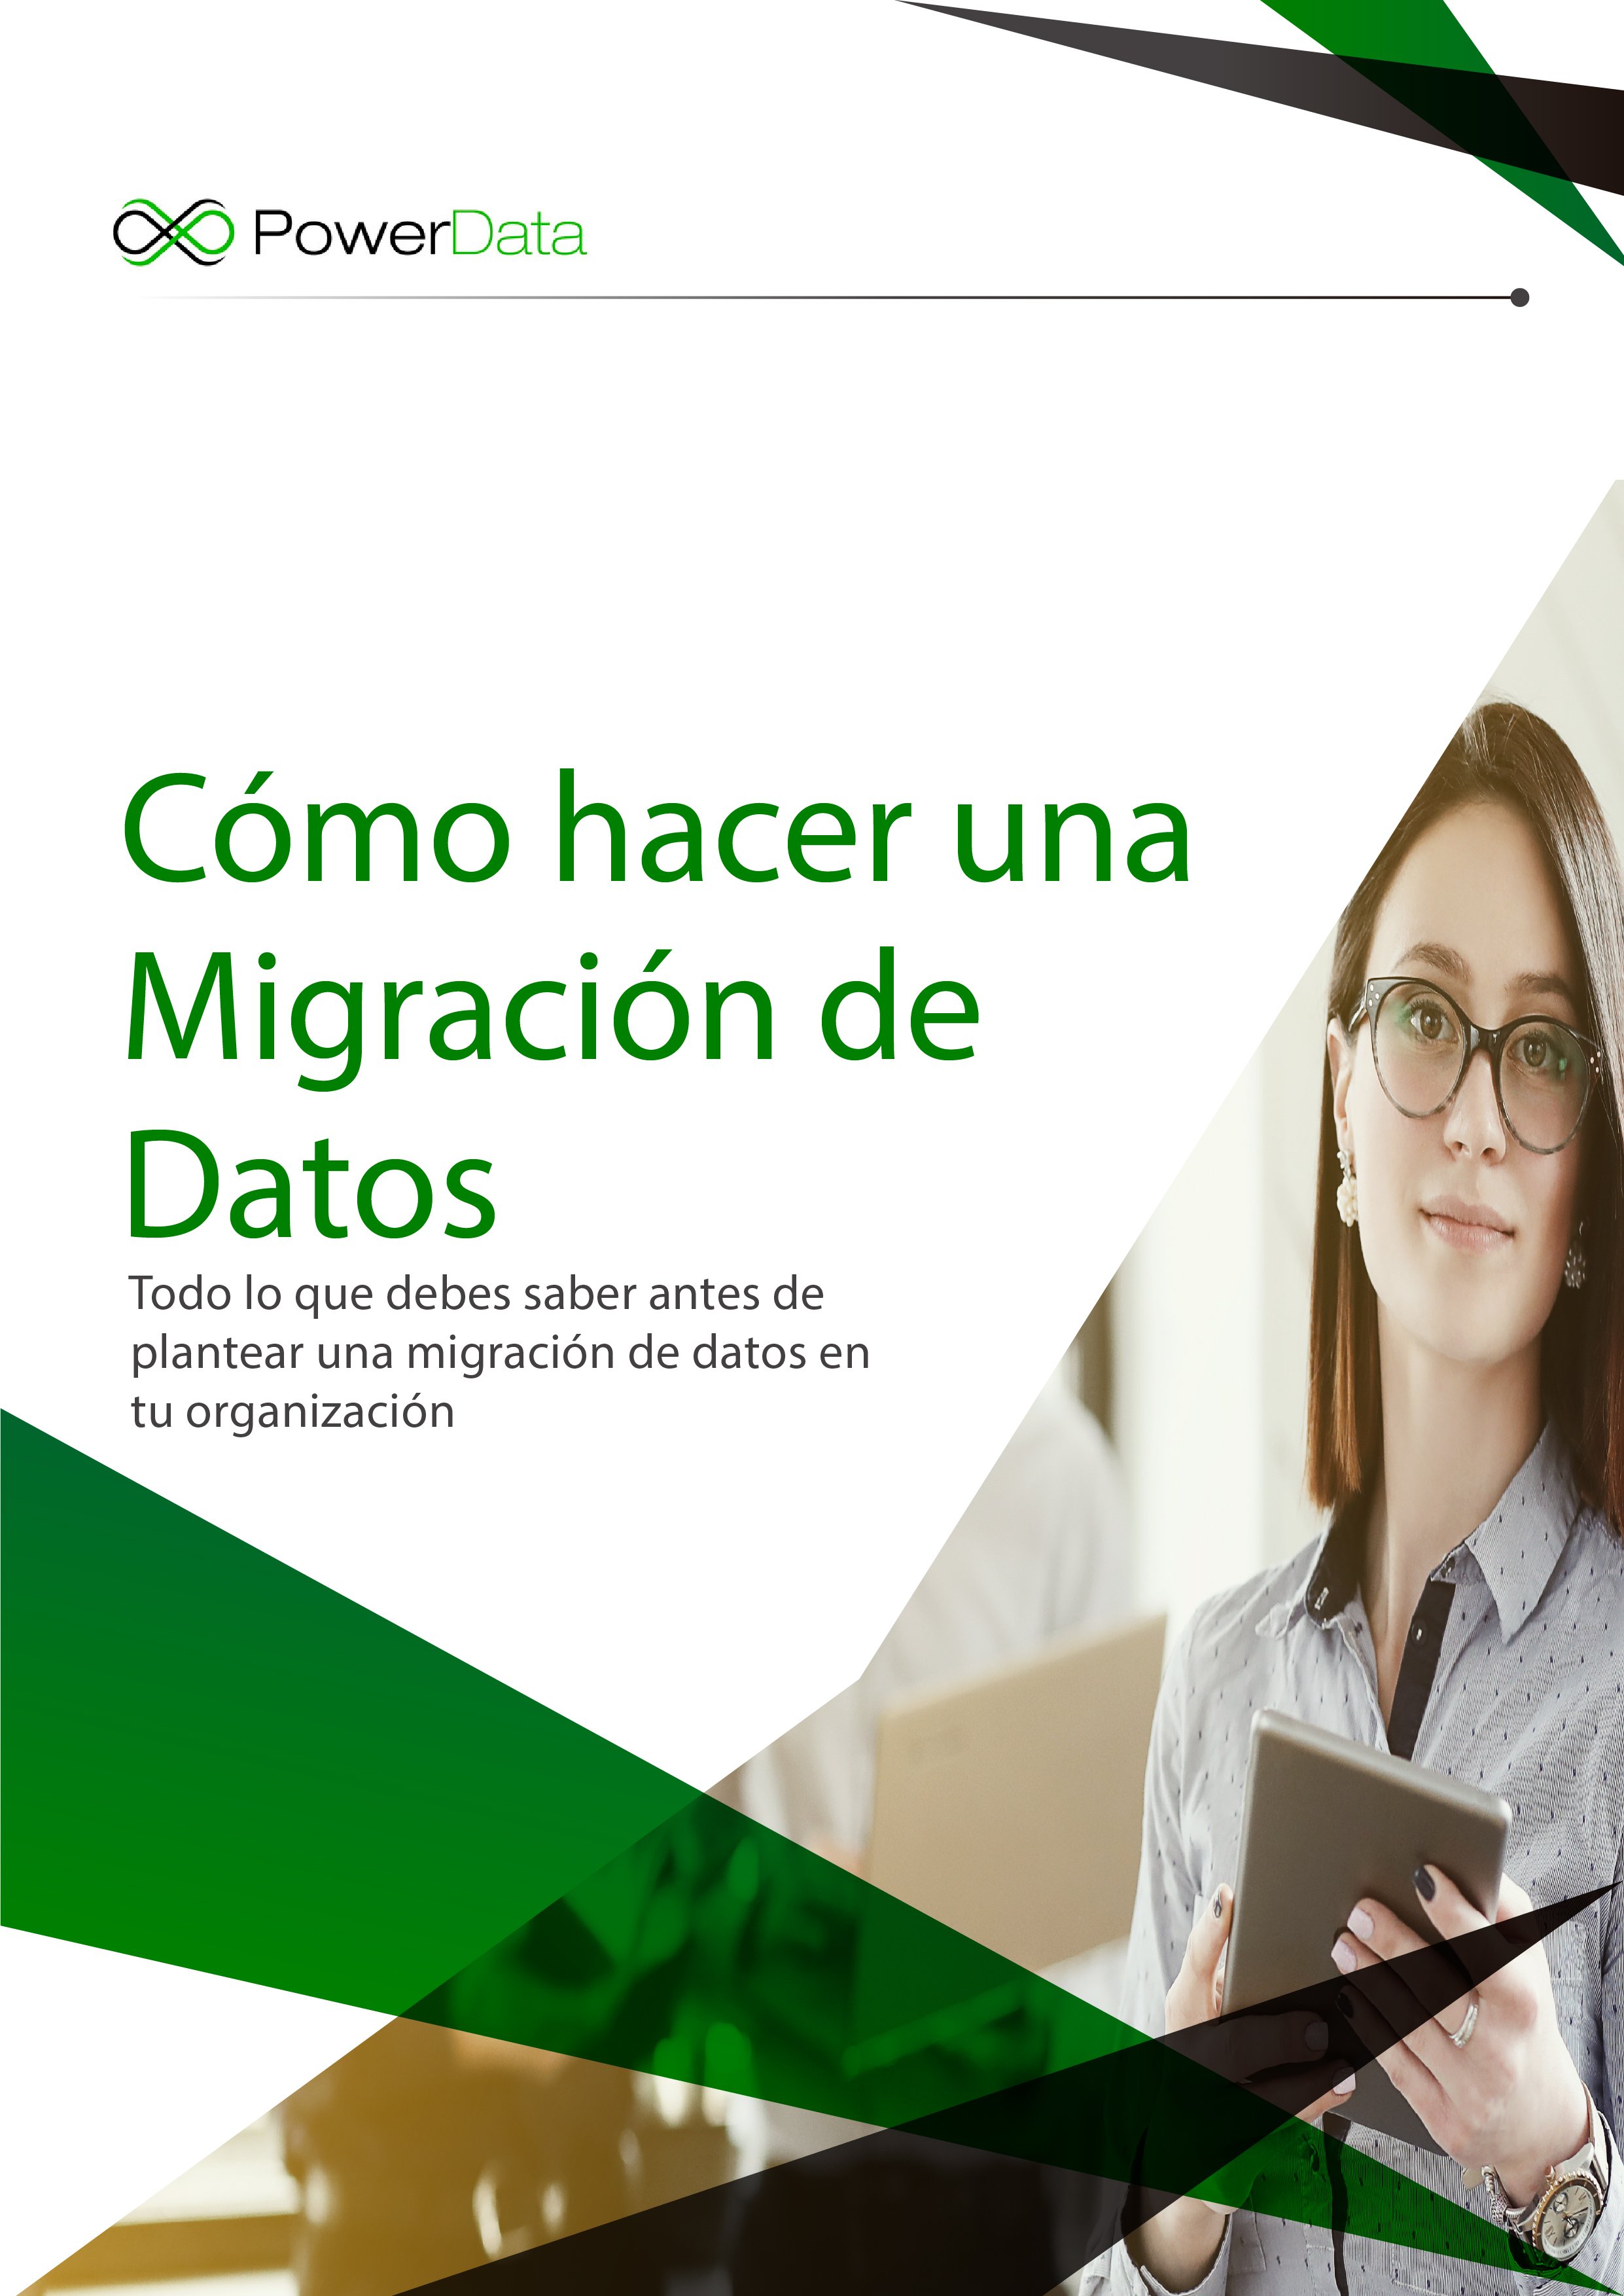 Portada Ebook Cómo hacer una migración de datos-01-01